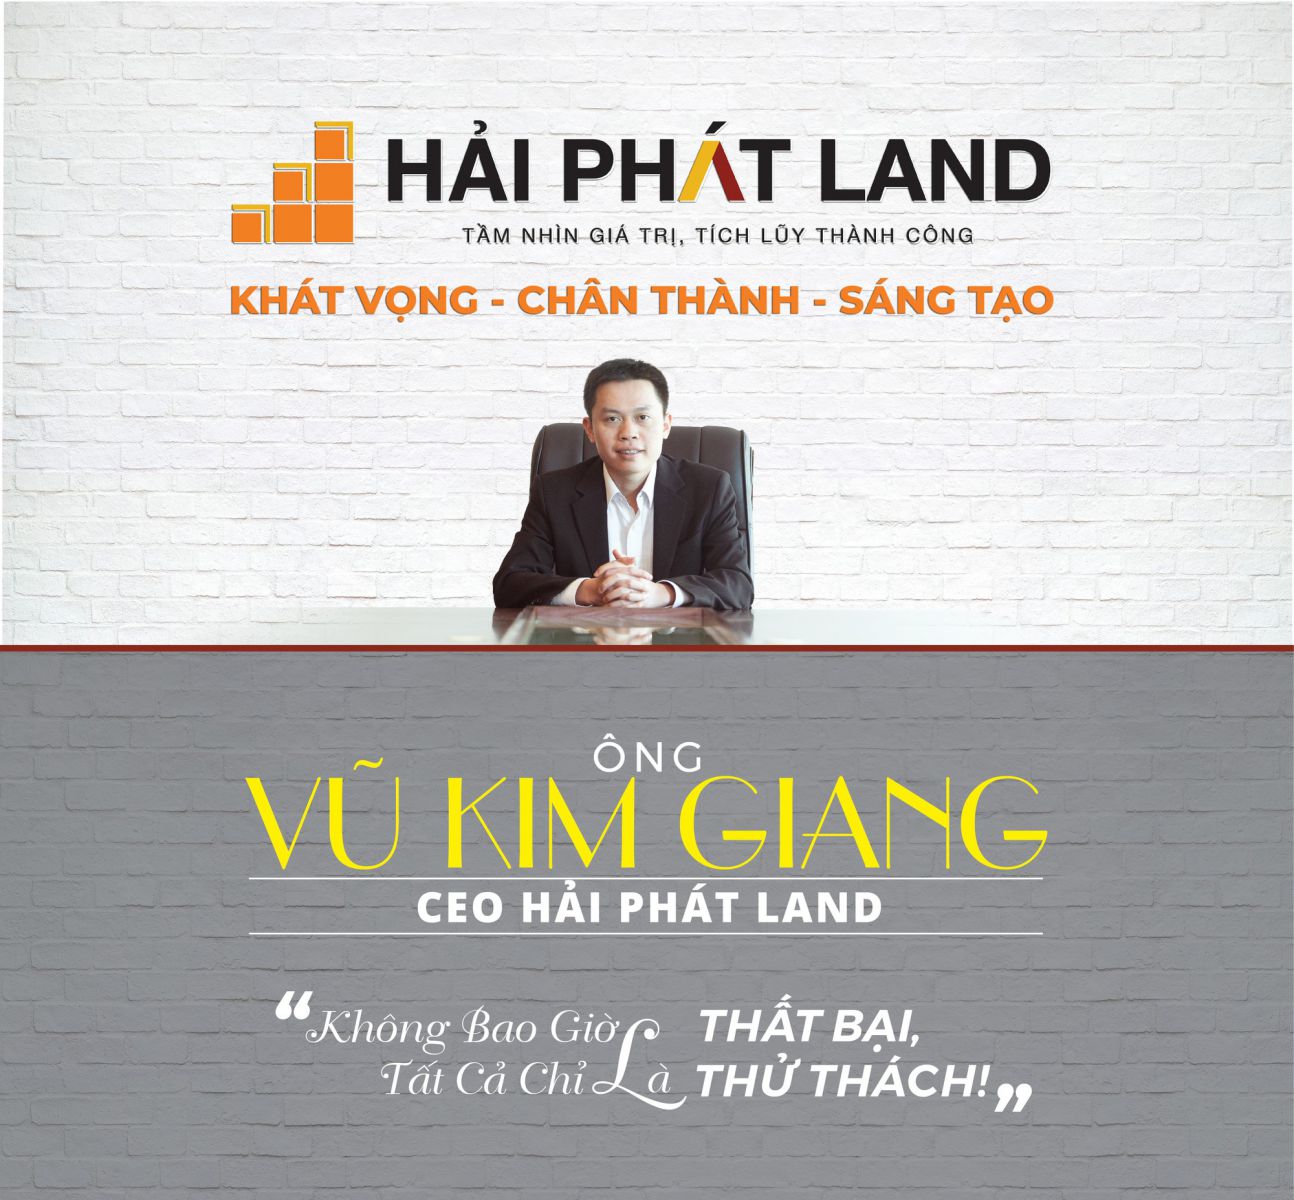 Ông Vũ Kim Giang - CEO Hải Phát Land "Không bao giờ là thất bại, tất cả chỉ là thử thách"